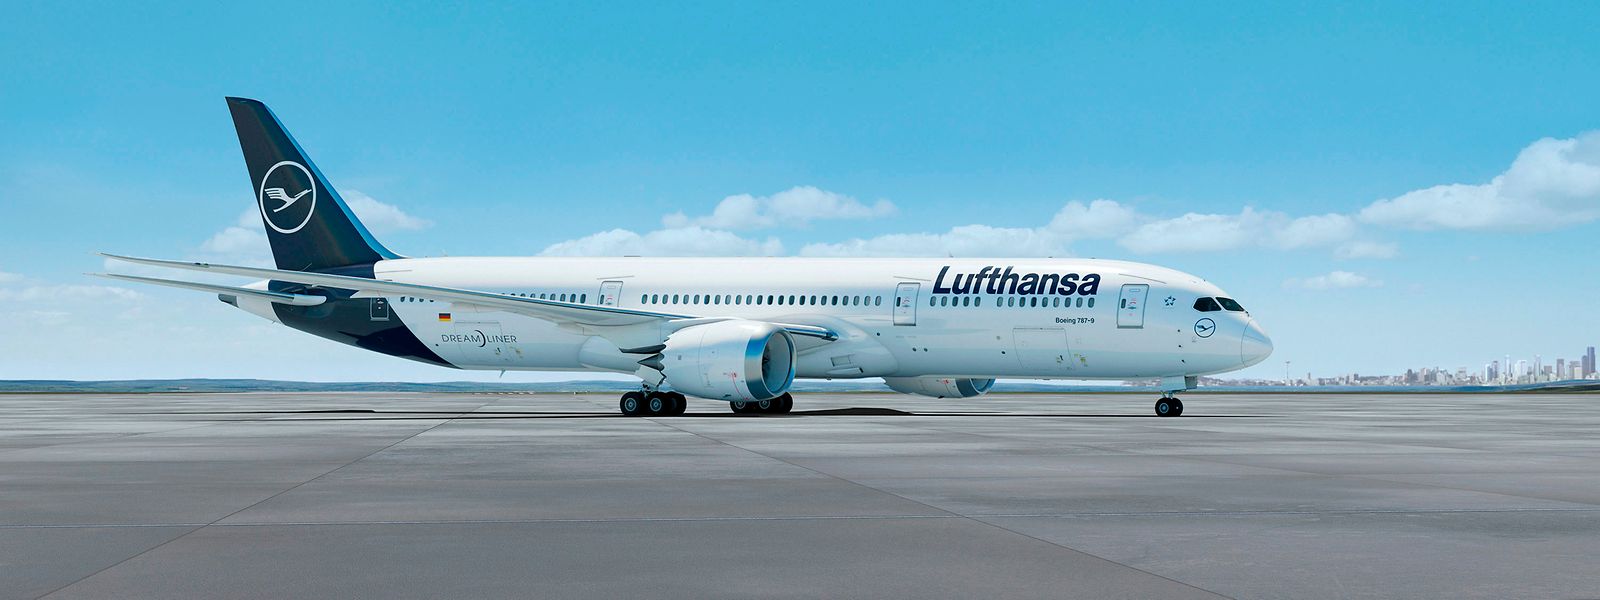 Der deutsche Lufthansa-Konzern hat 25 Boeing Dreamliner bestellt, die ersten fünf davon sollten bereits diesen Sommer fliegen.